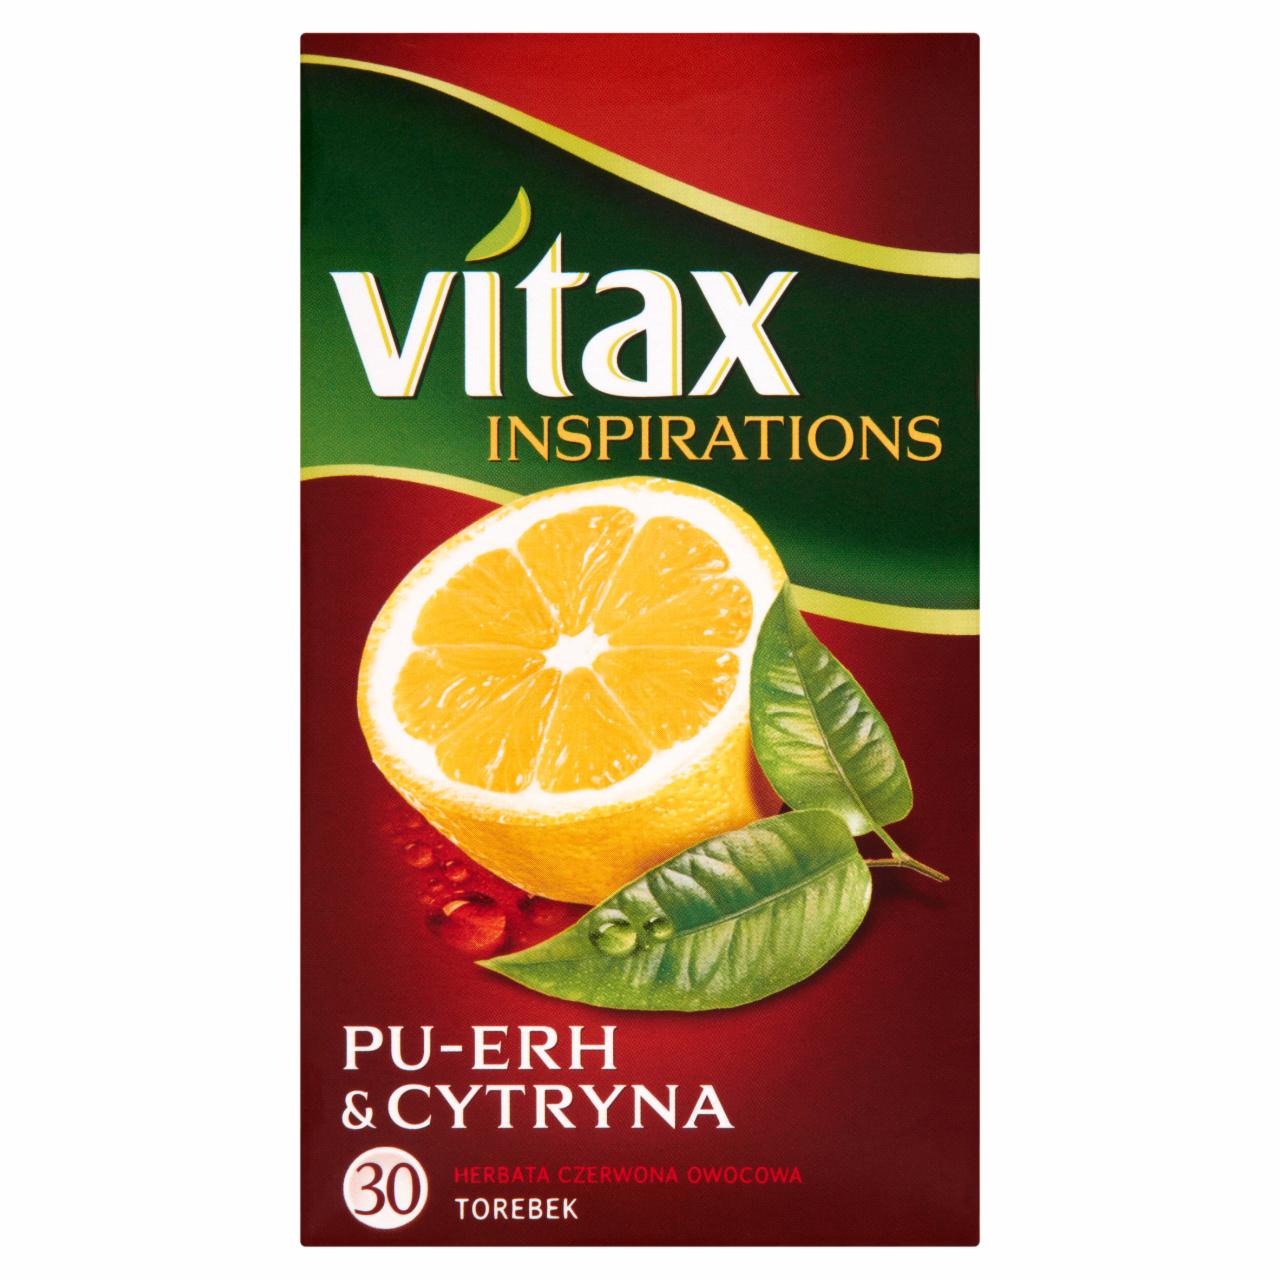 Zdjęcia - Vitax Inspirations Pu-Erh and Cytryna Herbata czerwona owocowa 39 g (30 torebek)